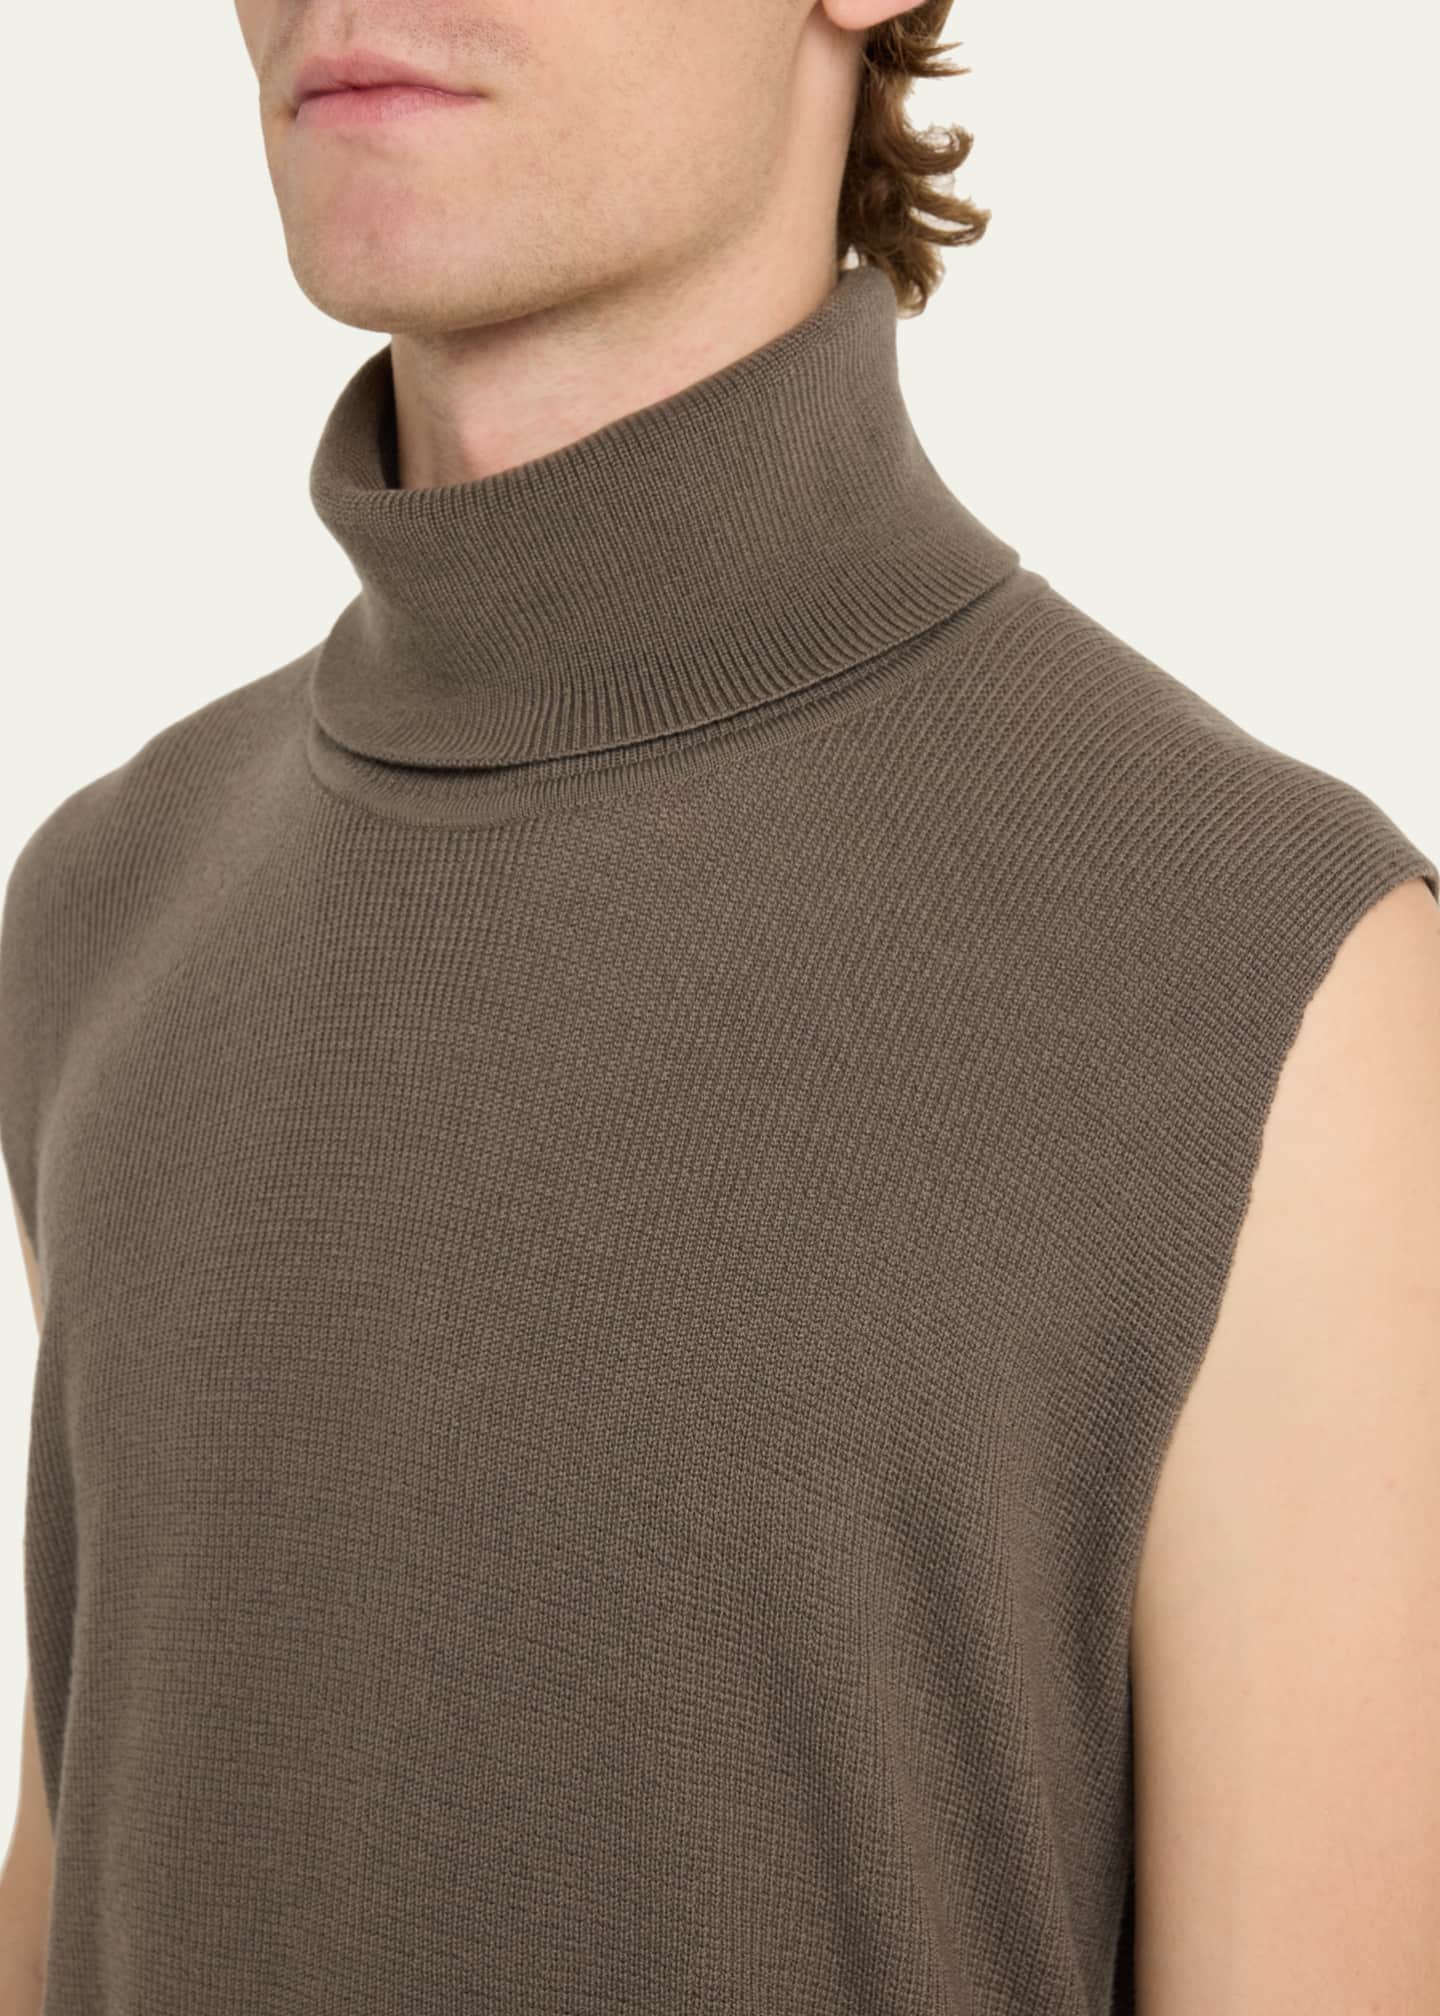 Homme Plisse Issey Miyake Men's Framework Turtleneck Knit Vest